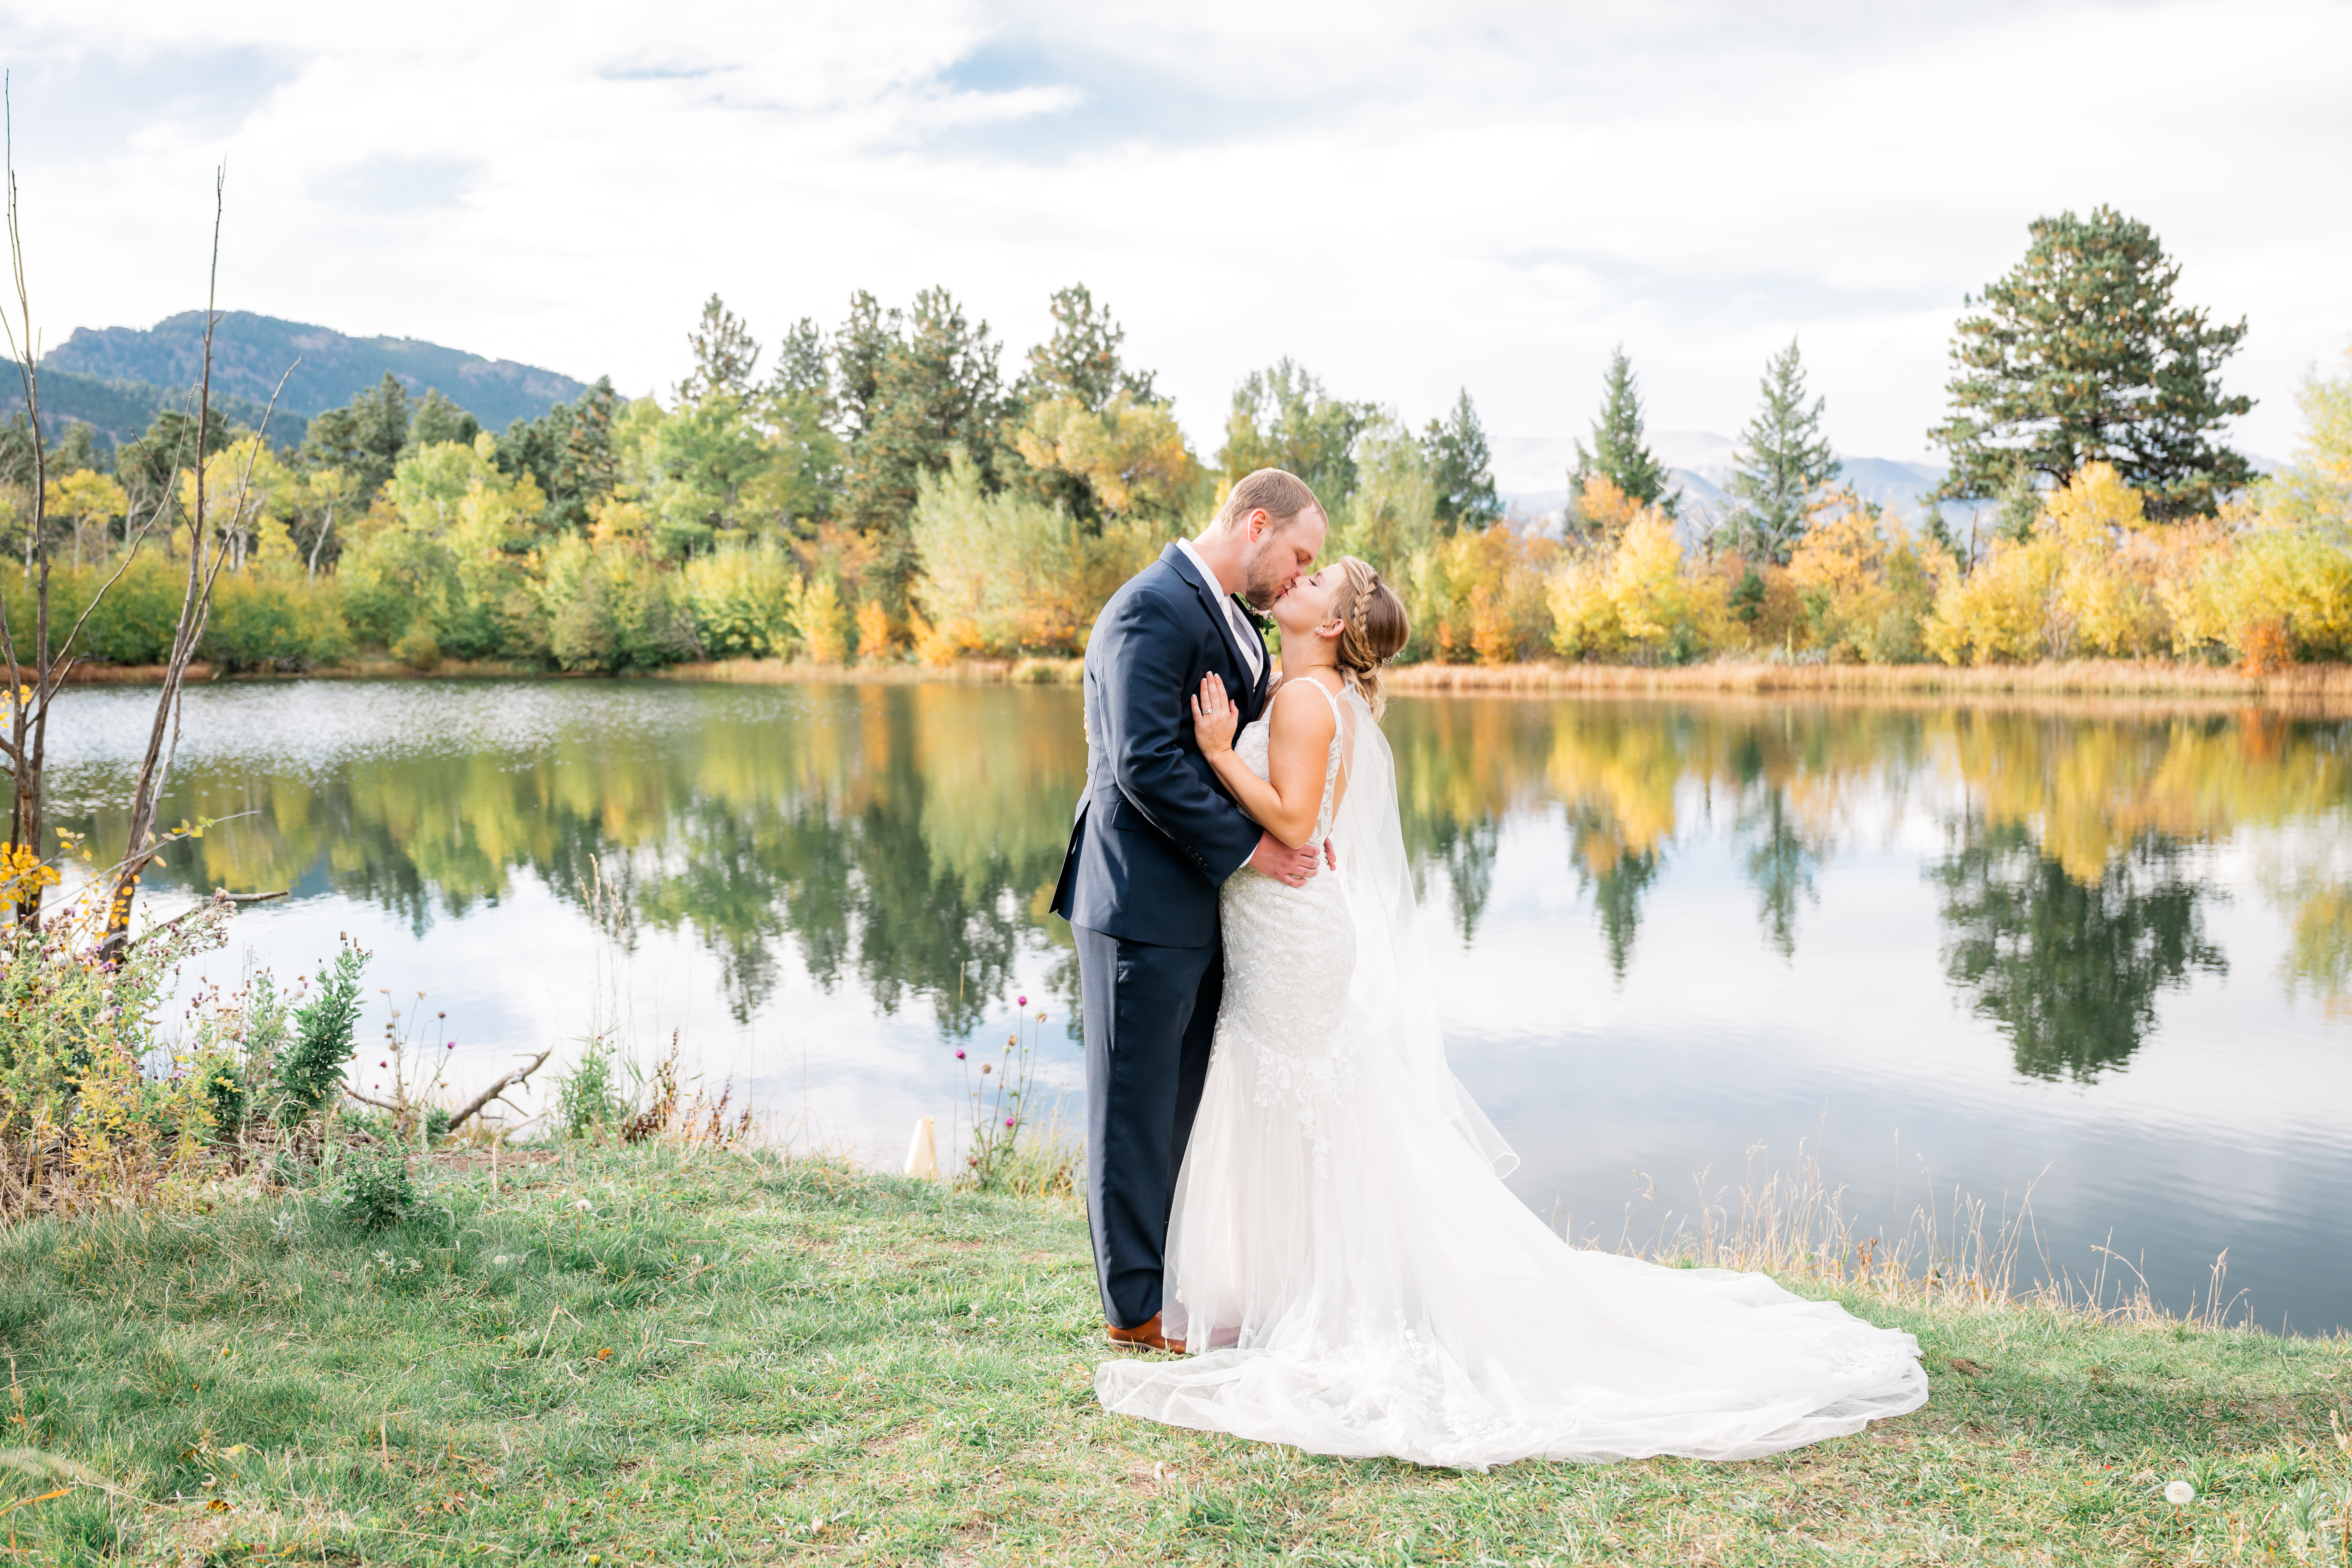 Fall Wedding at Cheley Lodge in Estes Park Colorado - Britni Girard Photography - Colorado wedding photographer and videographer